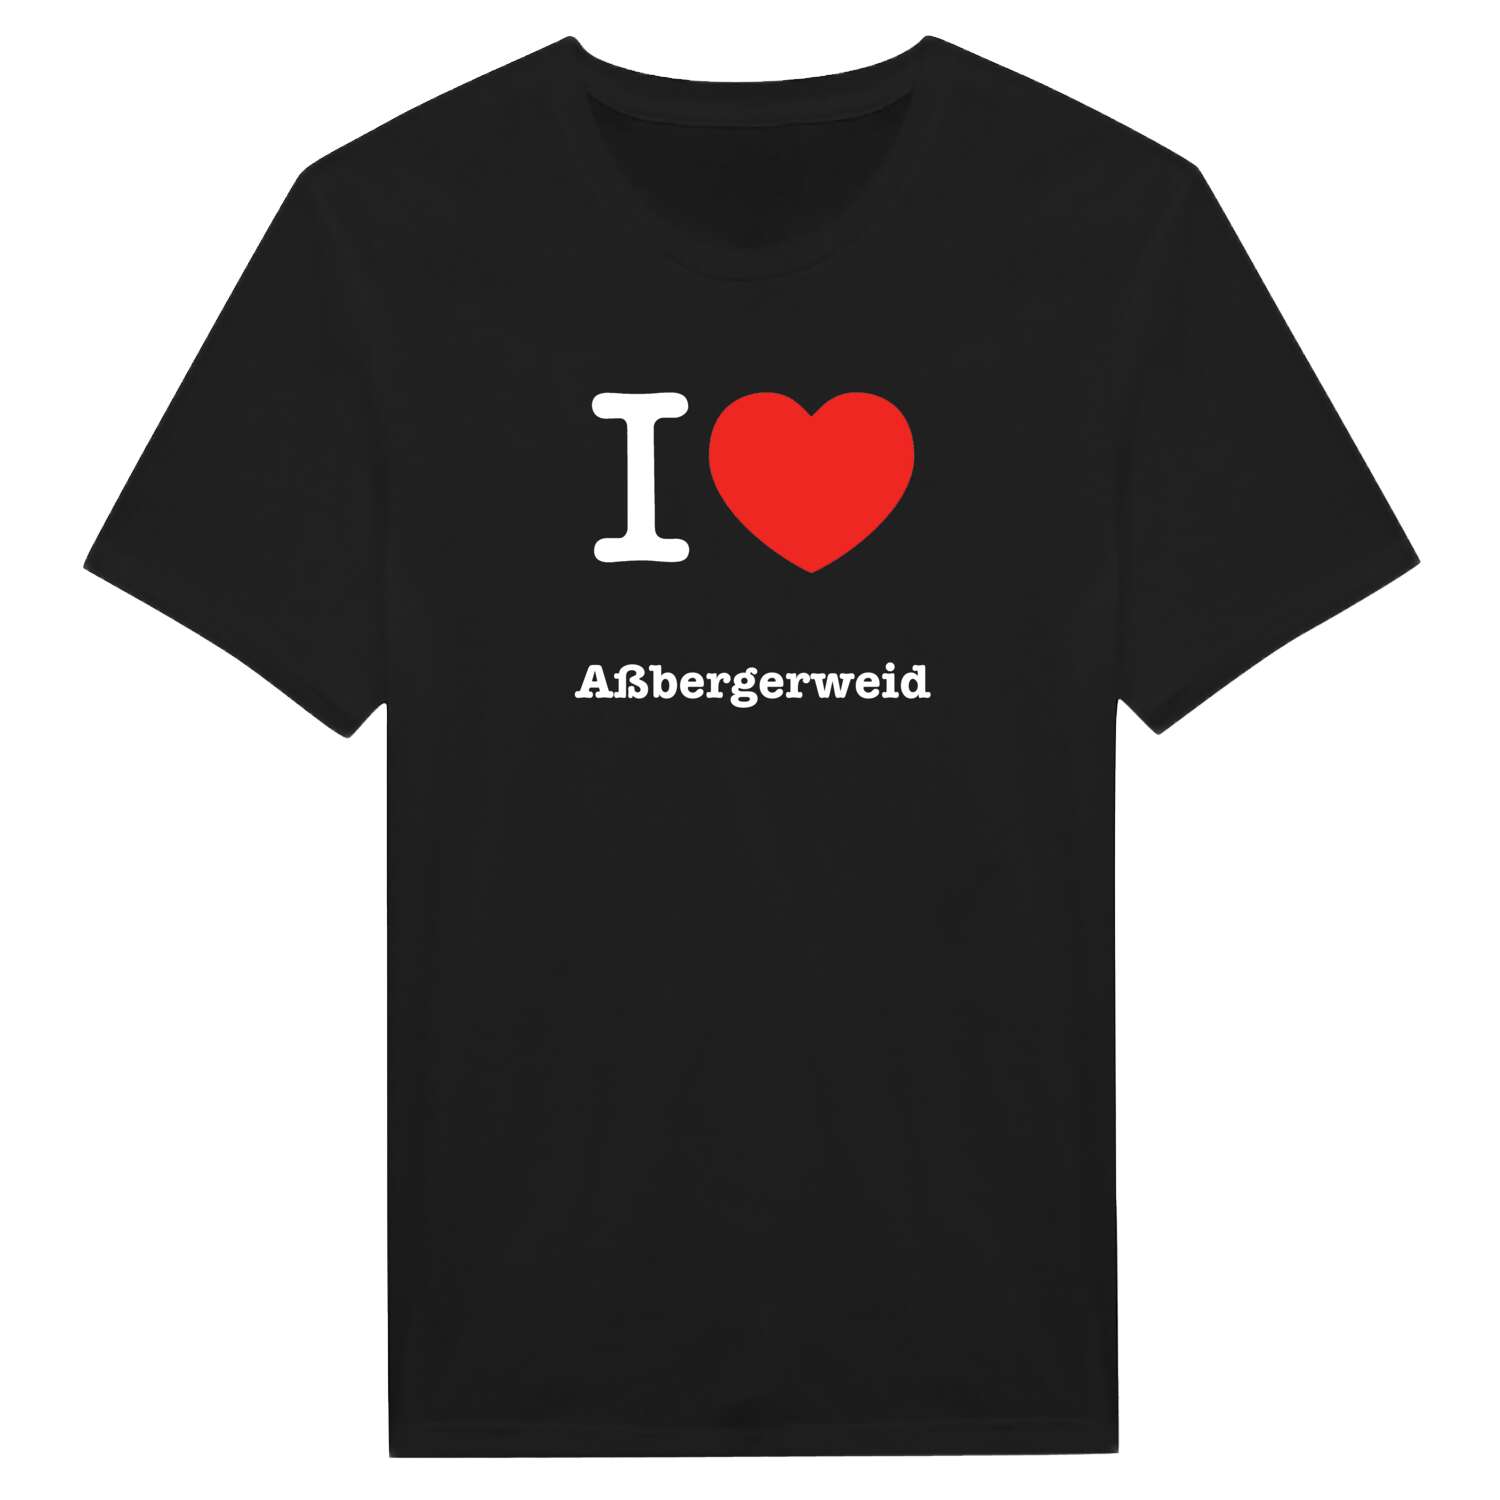 Aßbergerweid T-Shirt »I love«